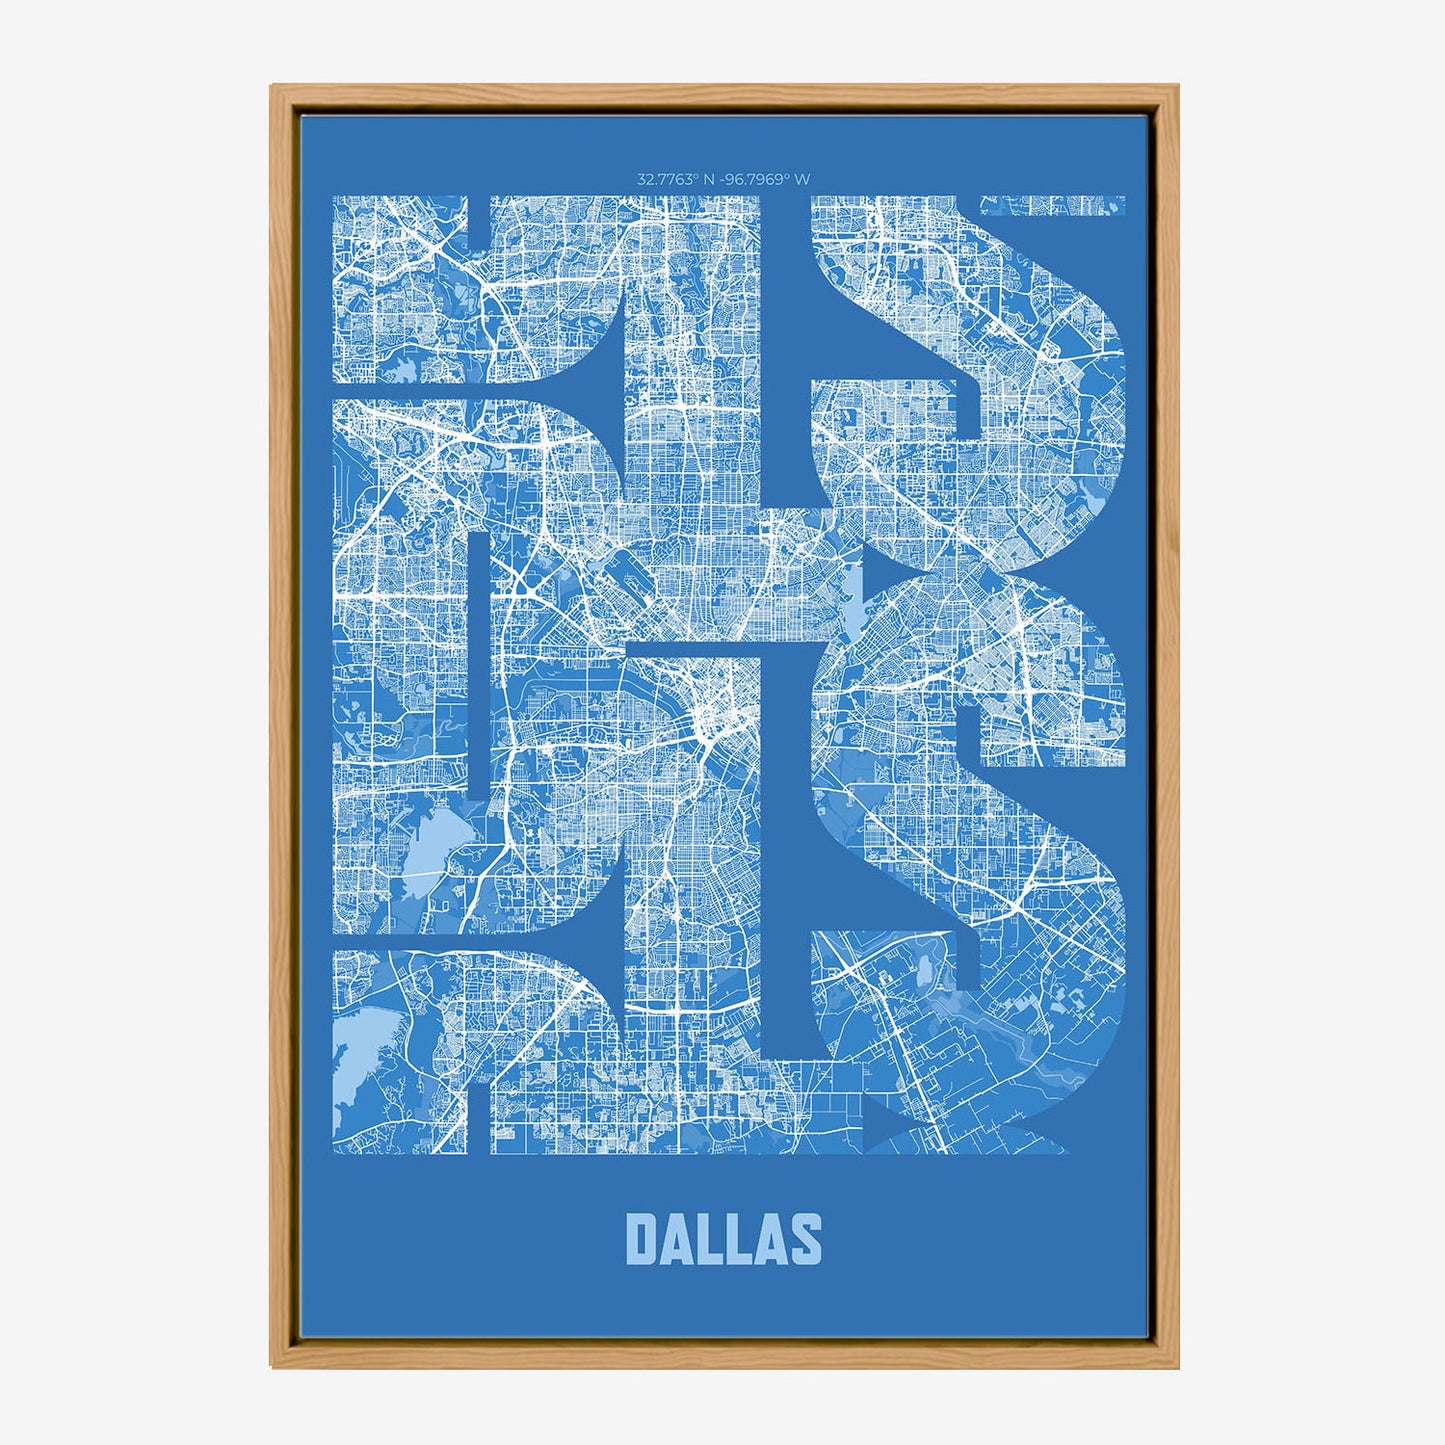 DLS Dallas Poster